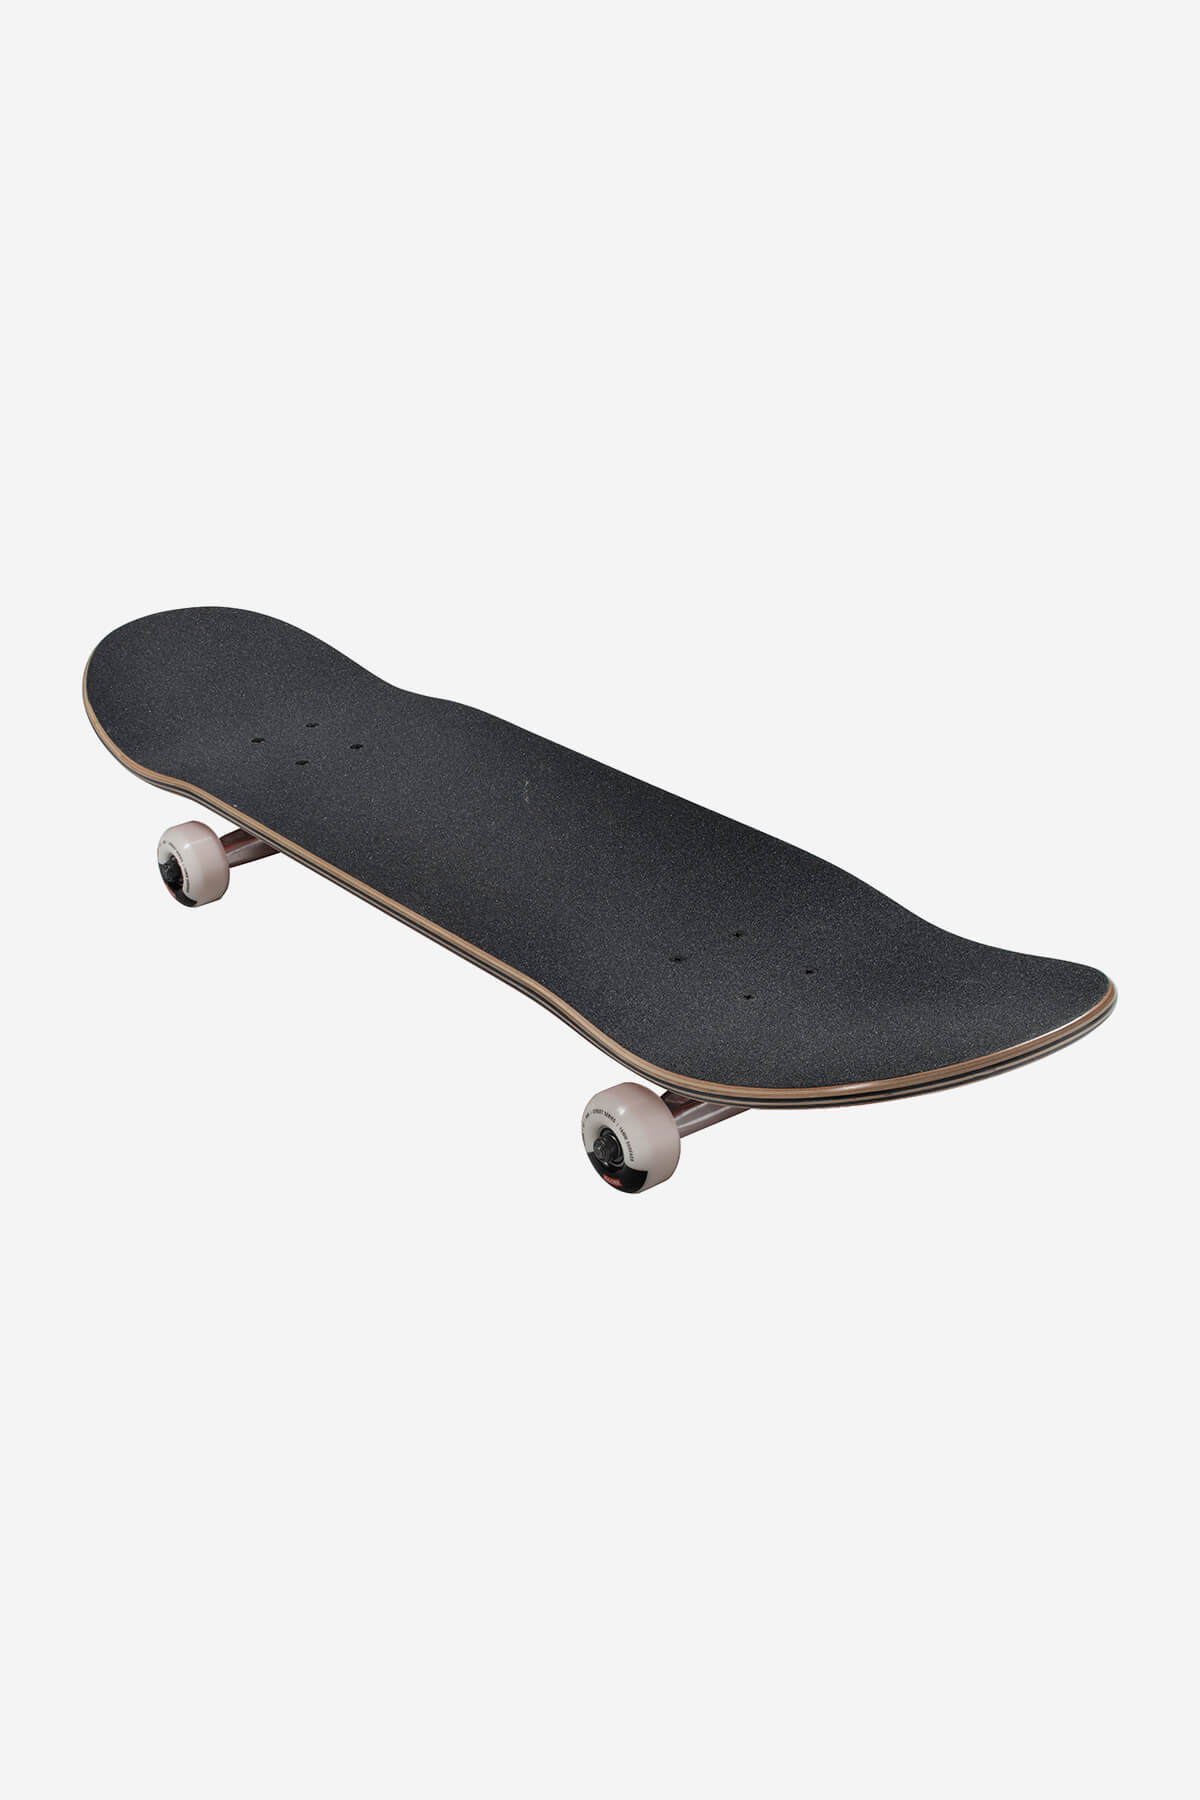 Globe Skateboard completa G1 Lineform 8,25" completo Skateboard in Cinnamon